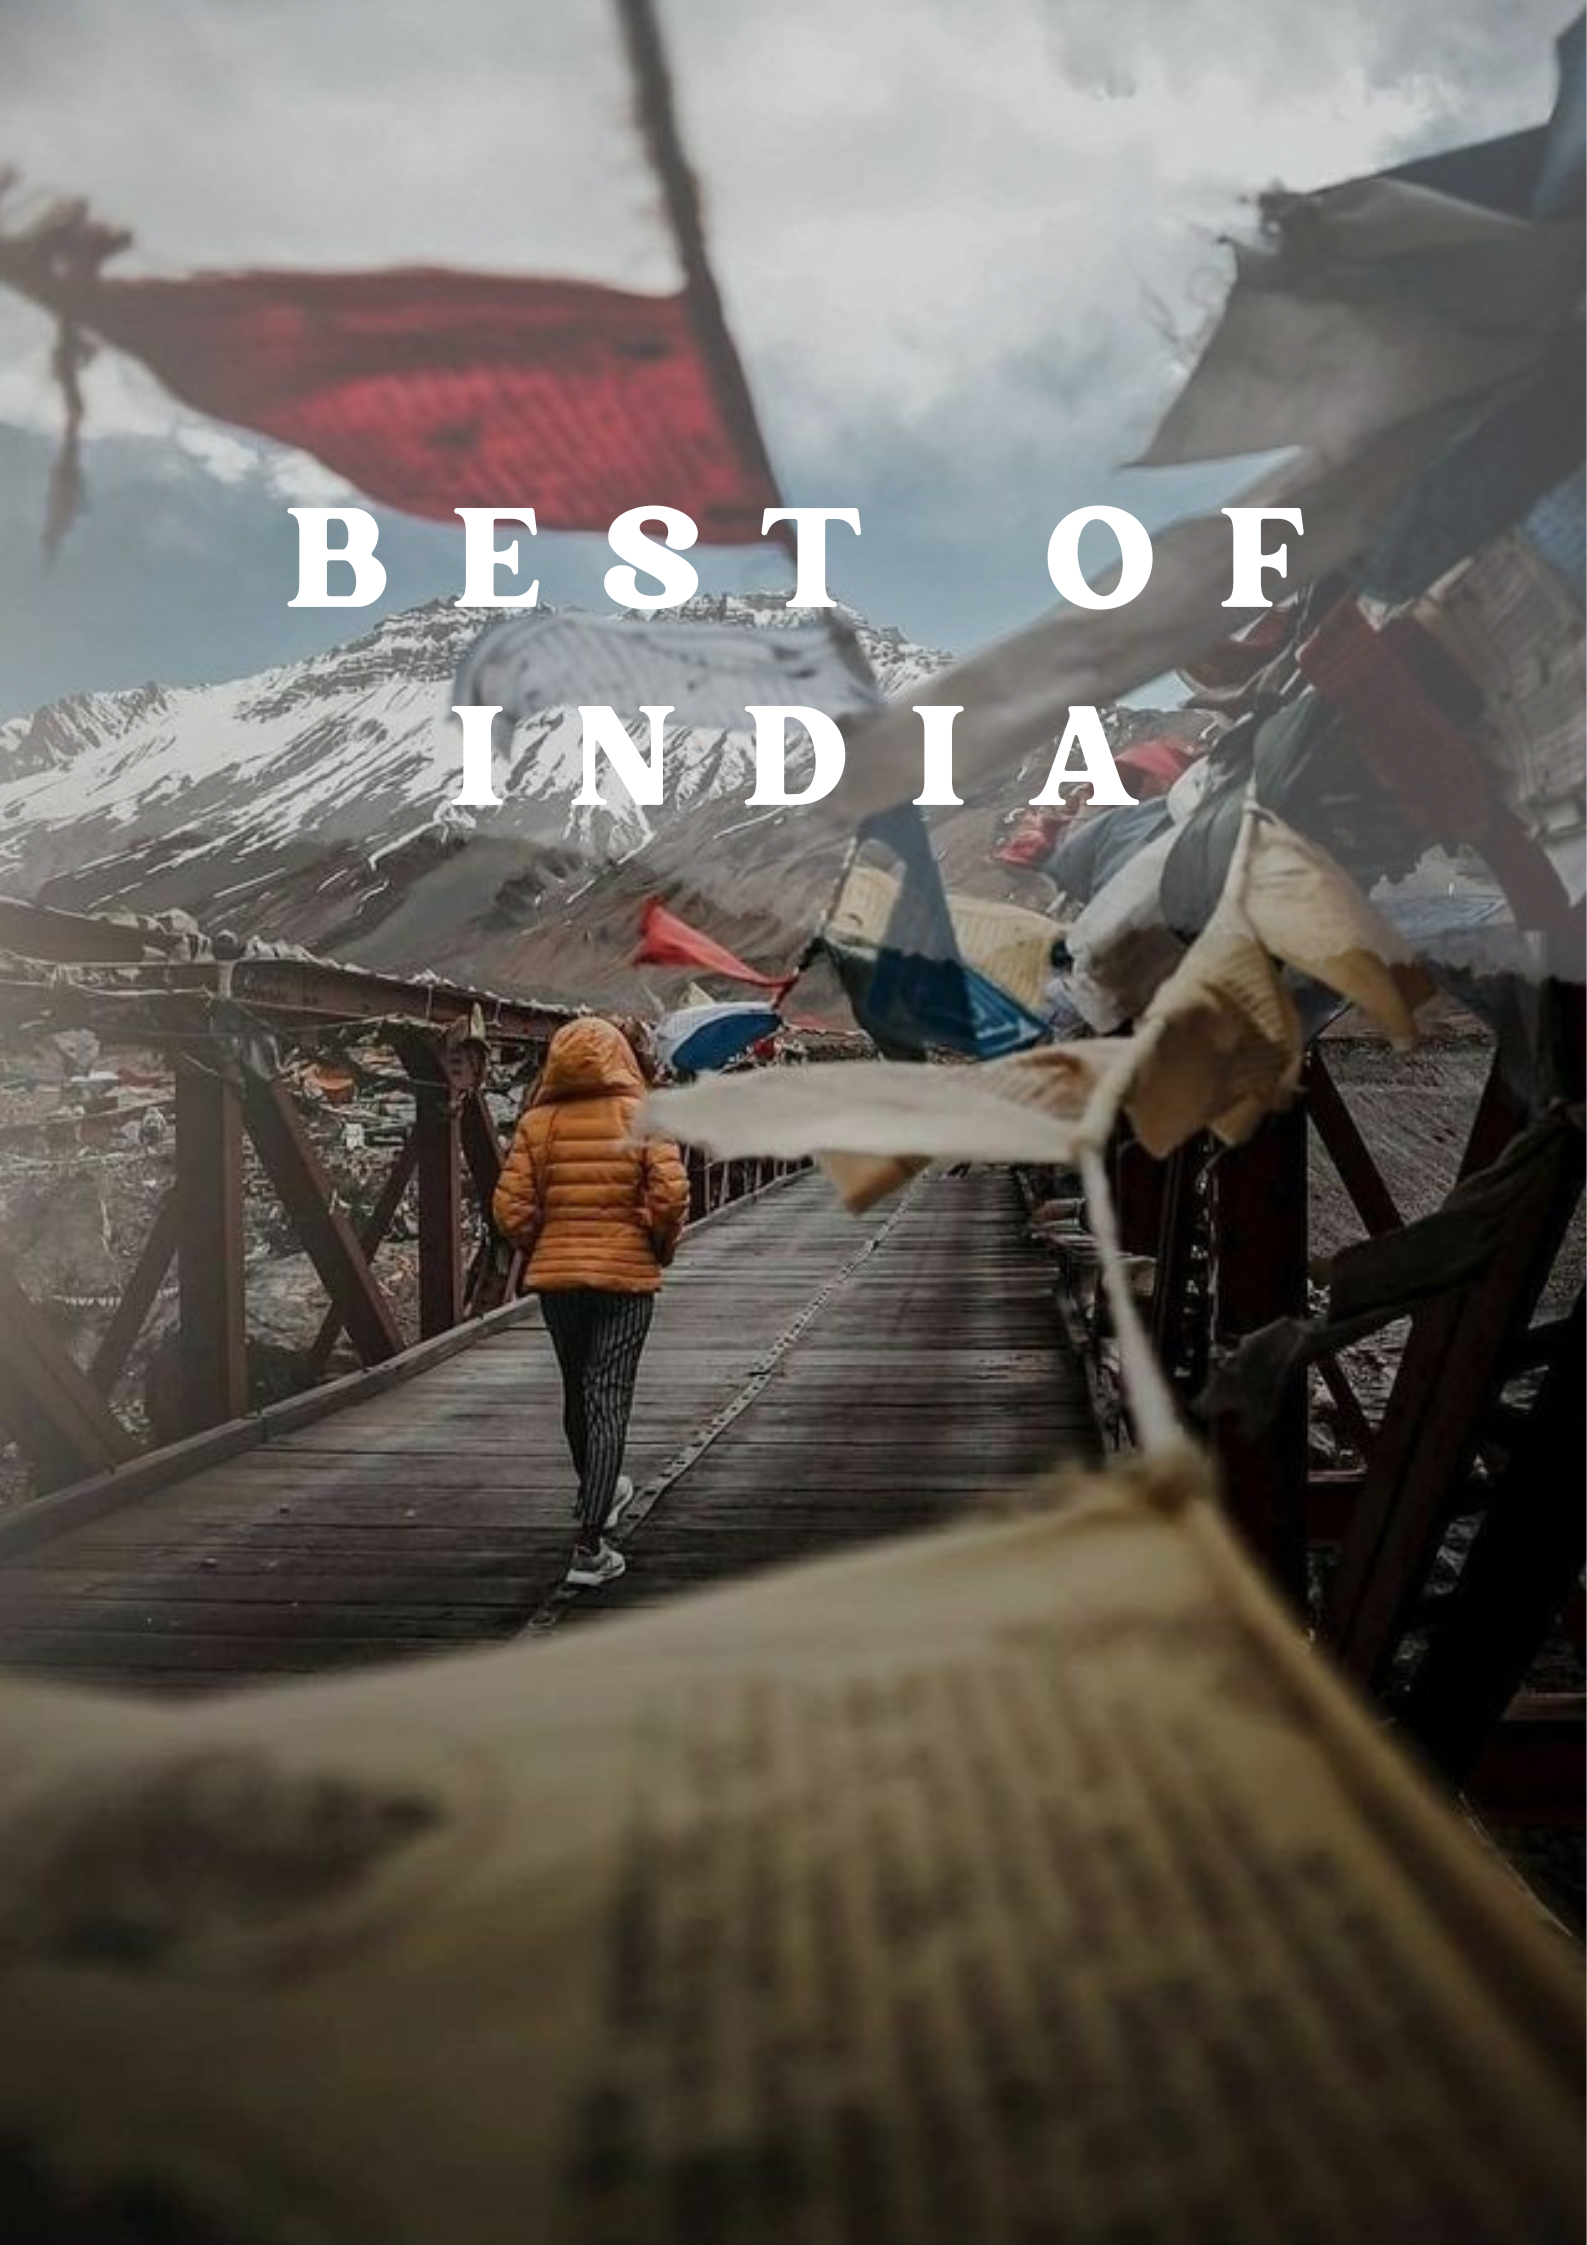 Best of India